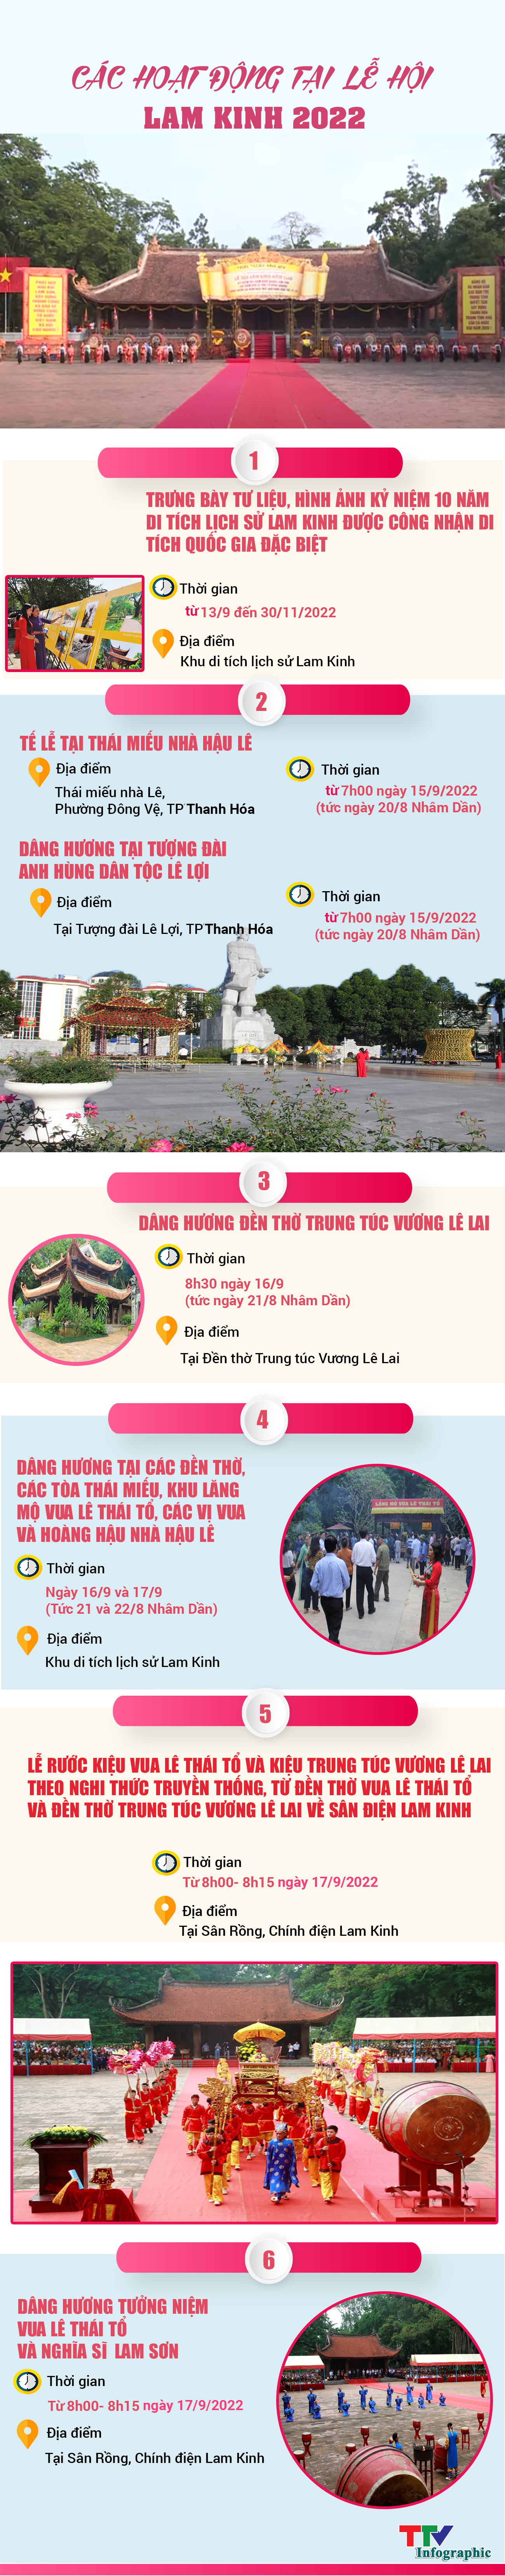 [Infographic] Các hoạt động tại lễ hội Lam Kinh năm 2022 - Ảnh 1.